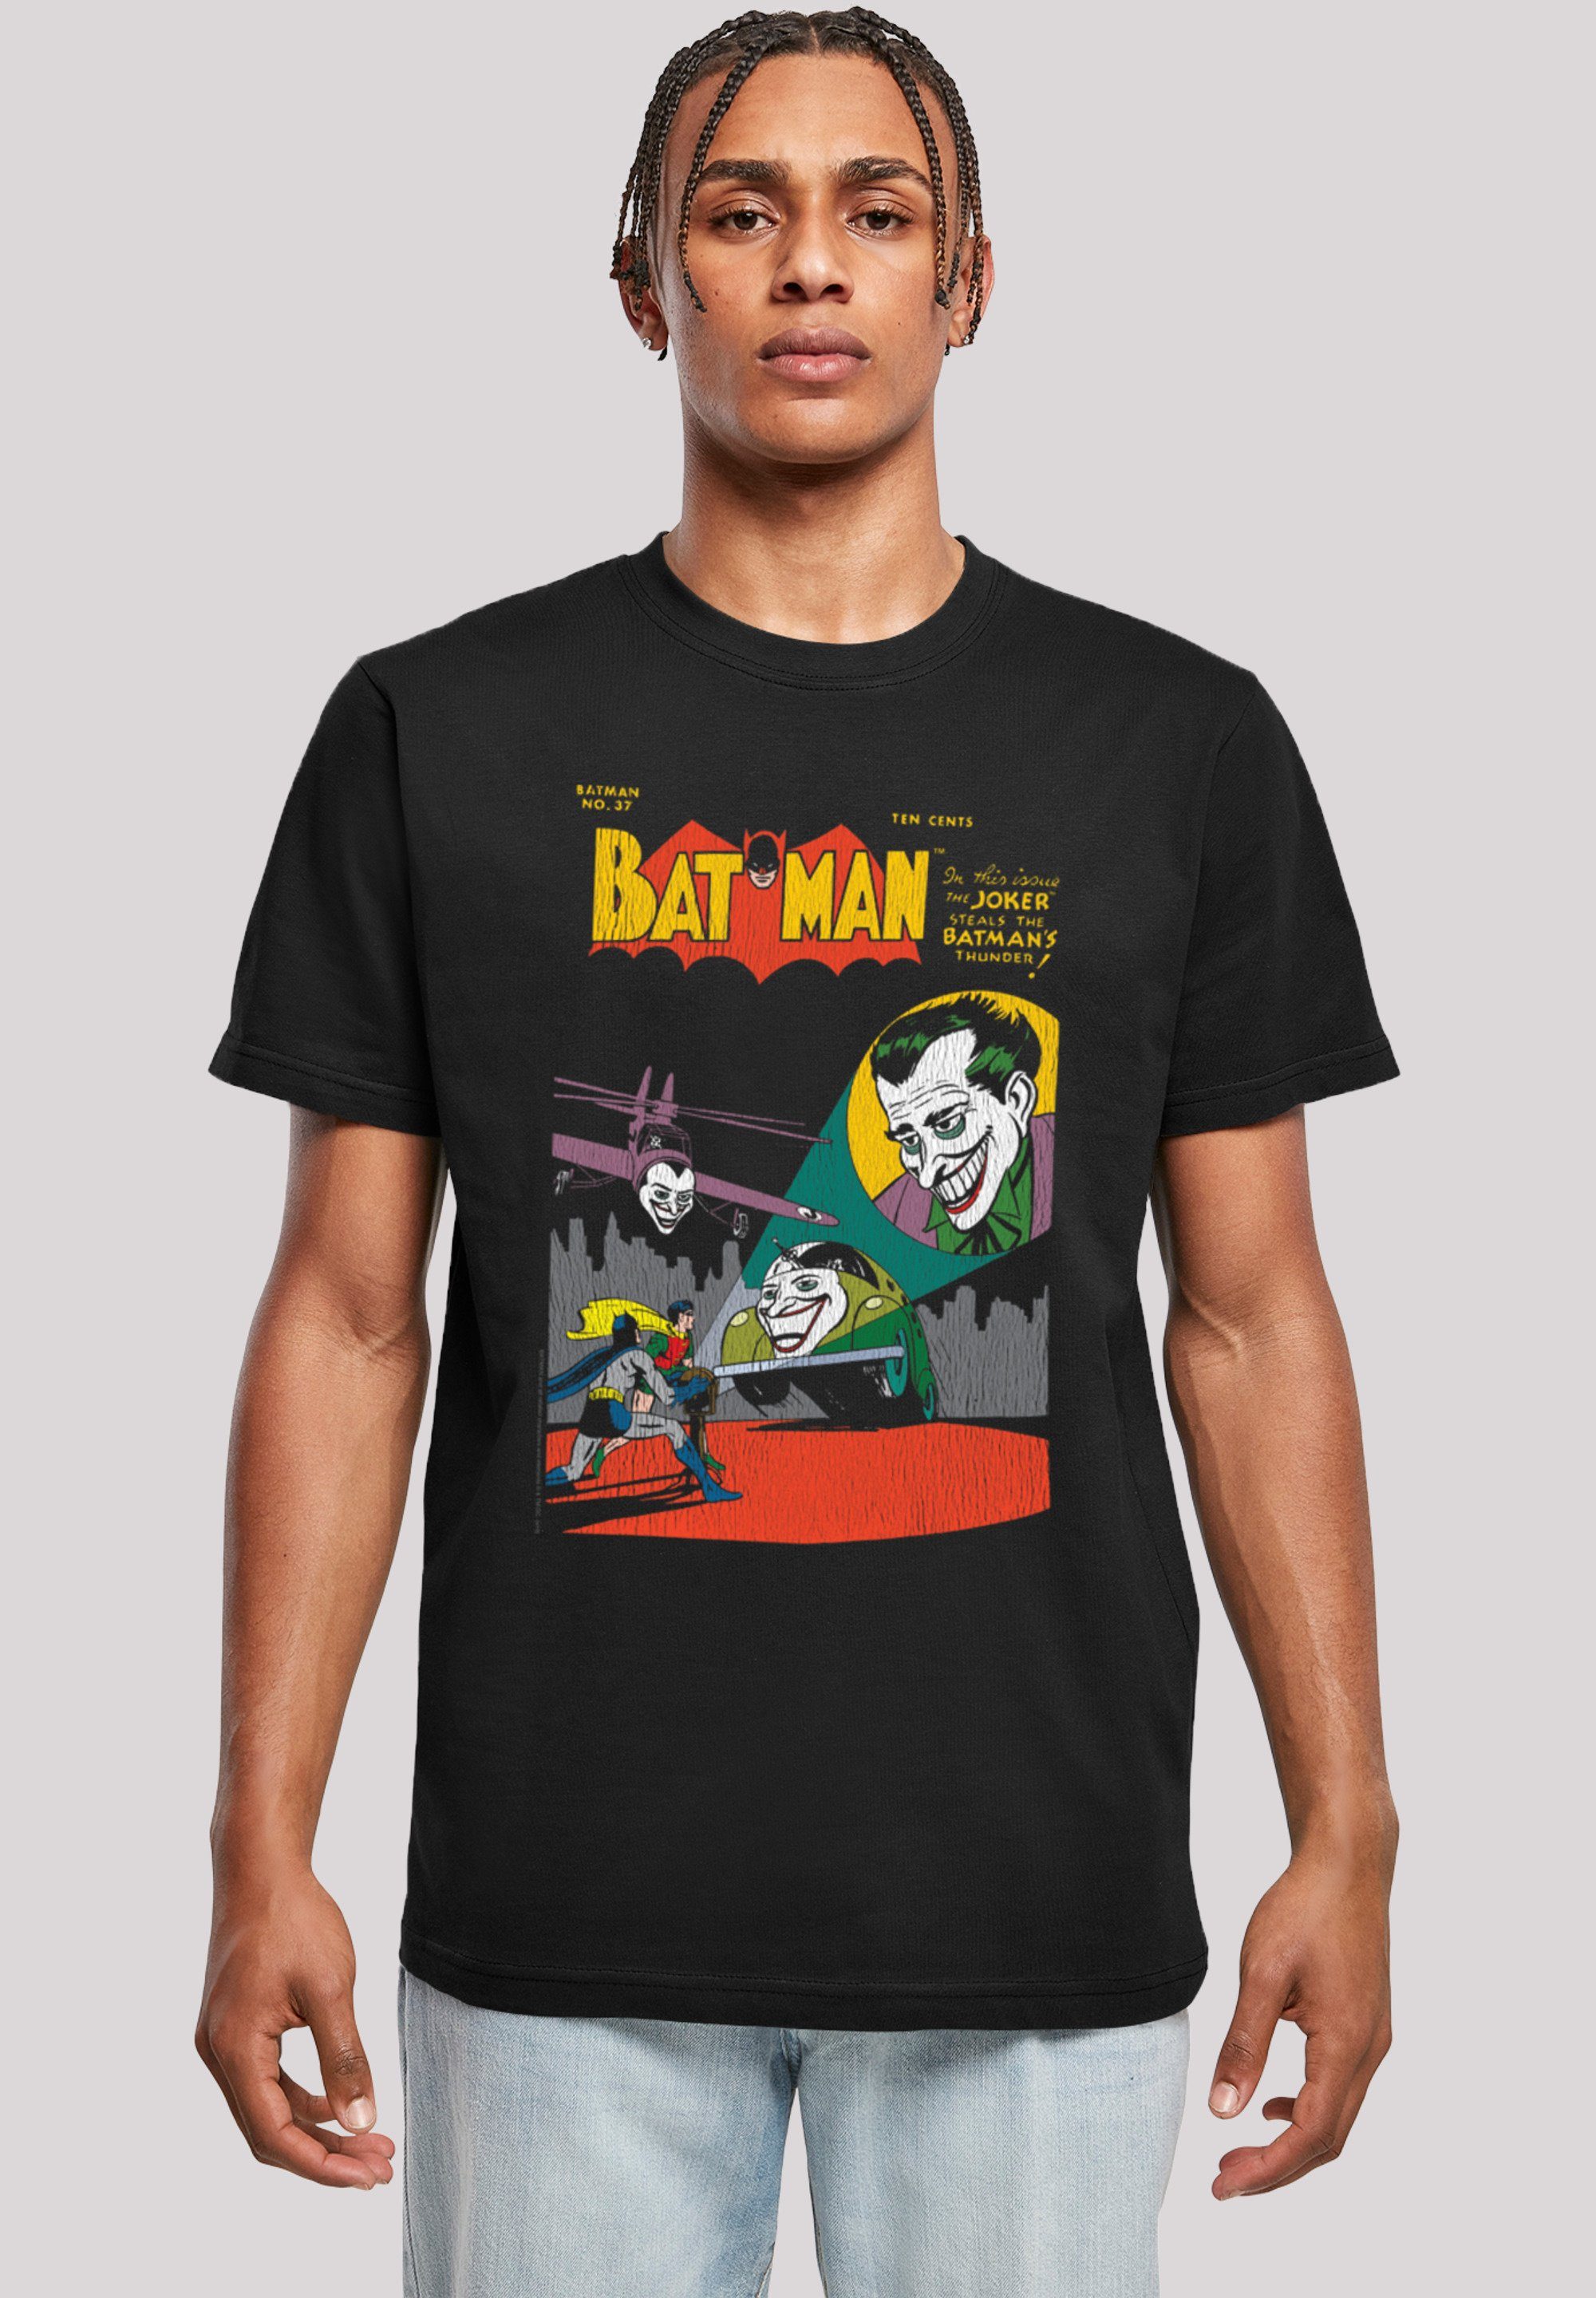 Comis DC Print T-Shirt Cover Superhelden 37 F4NT4STIC Batman No.